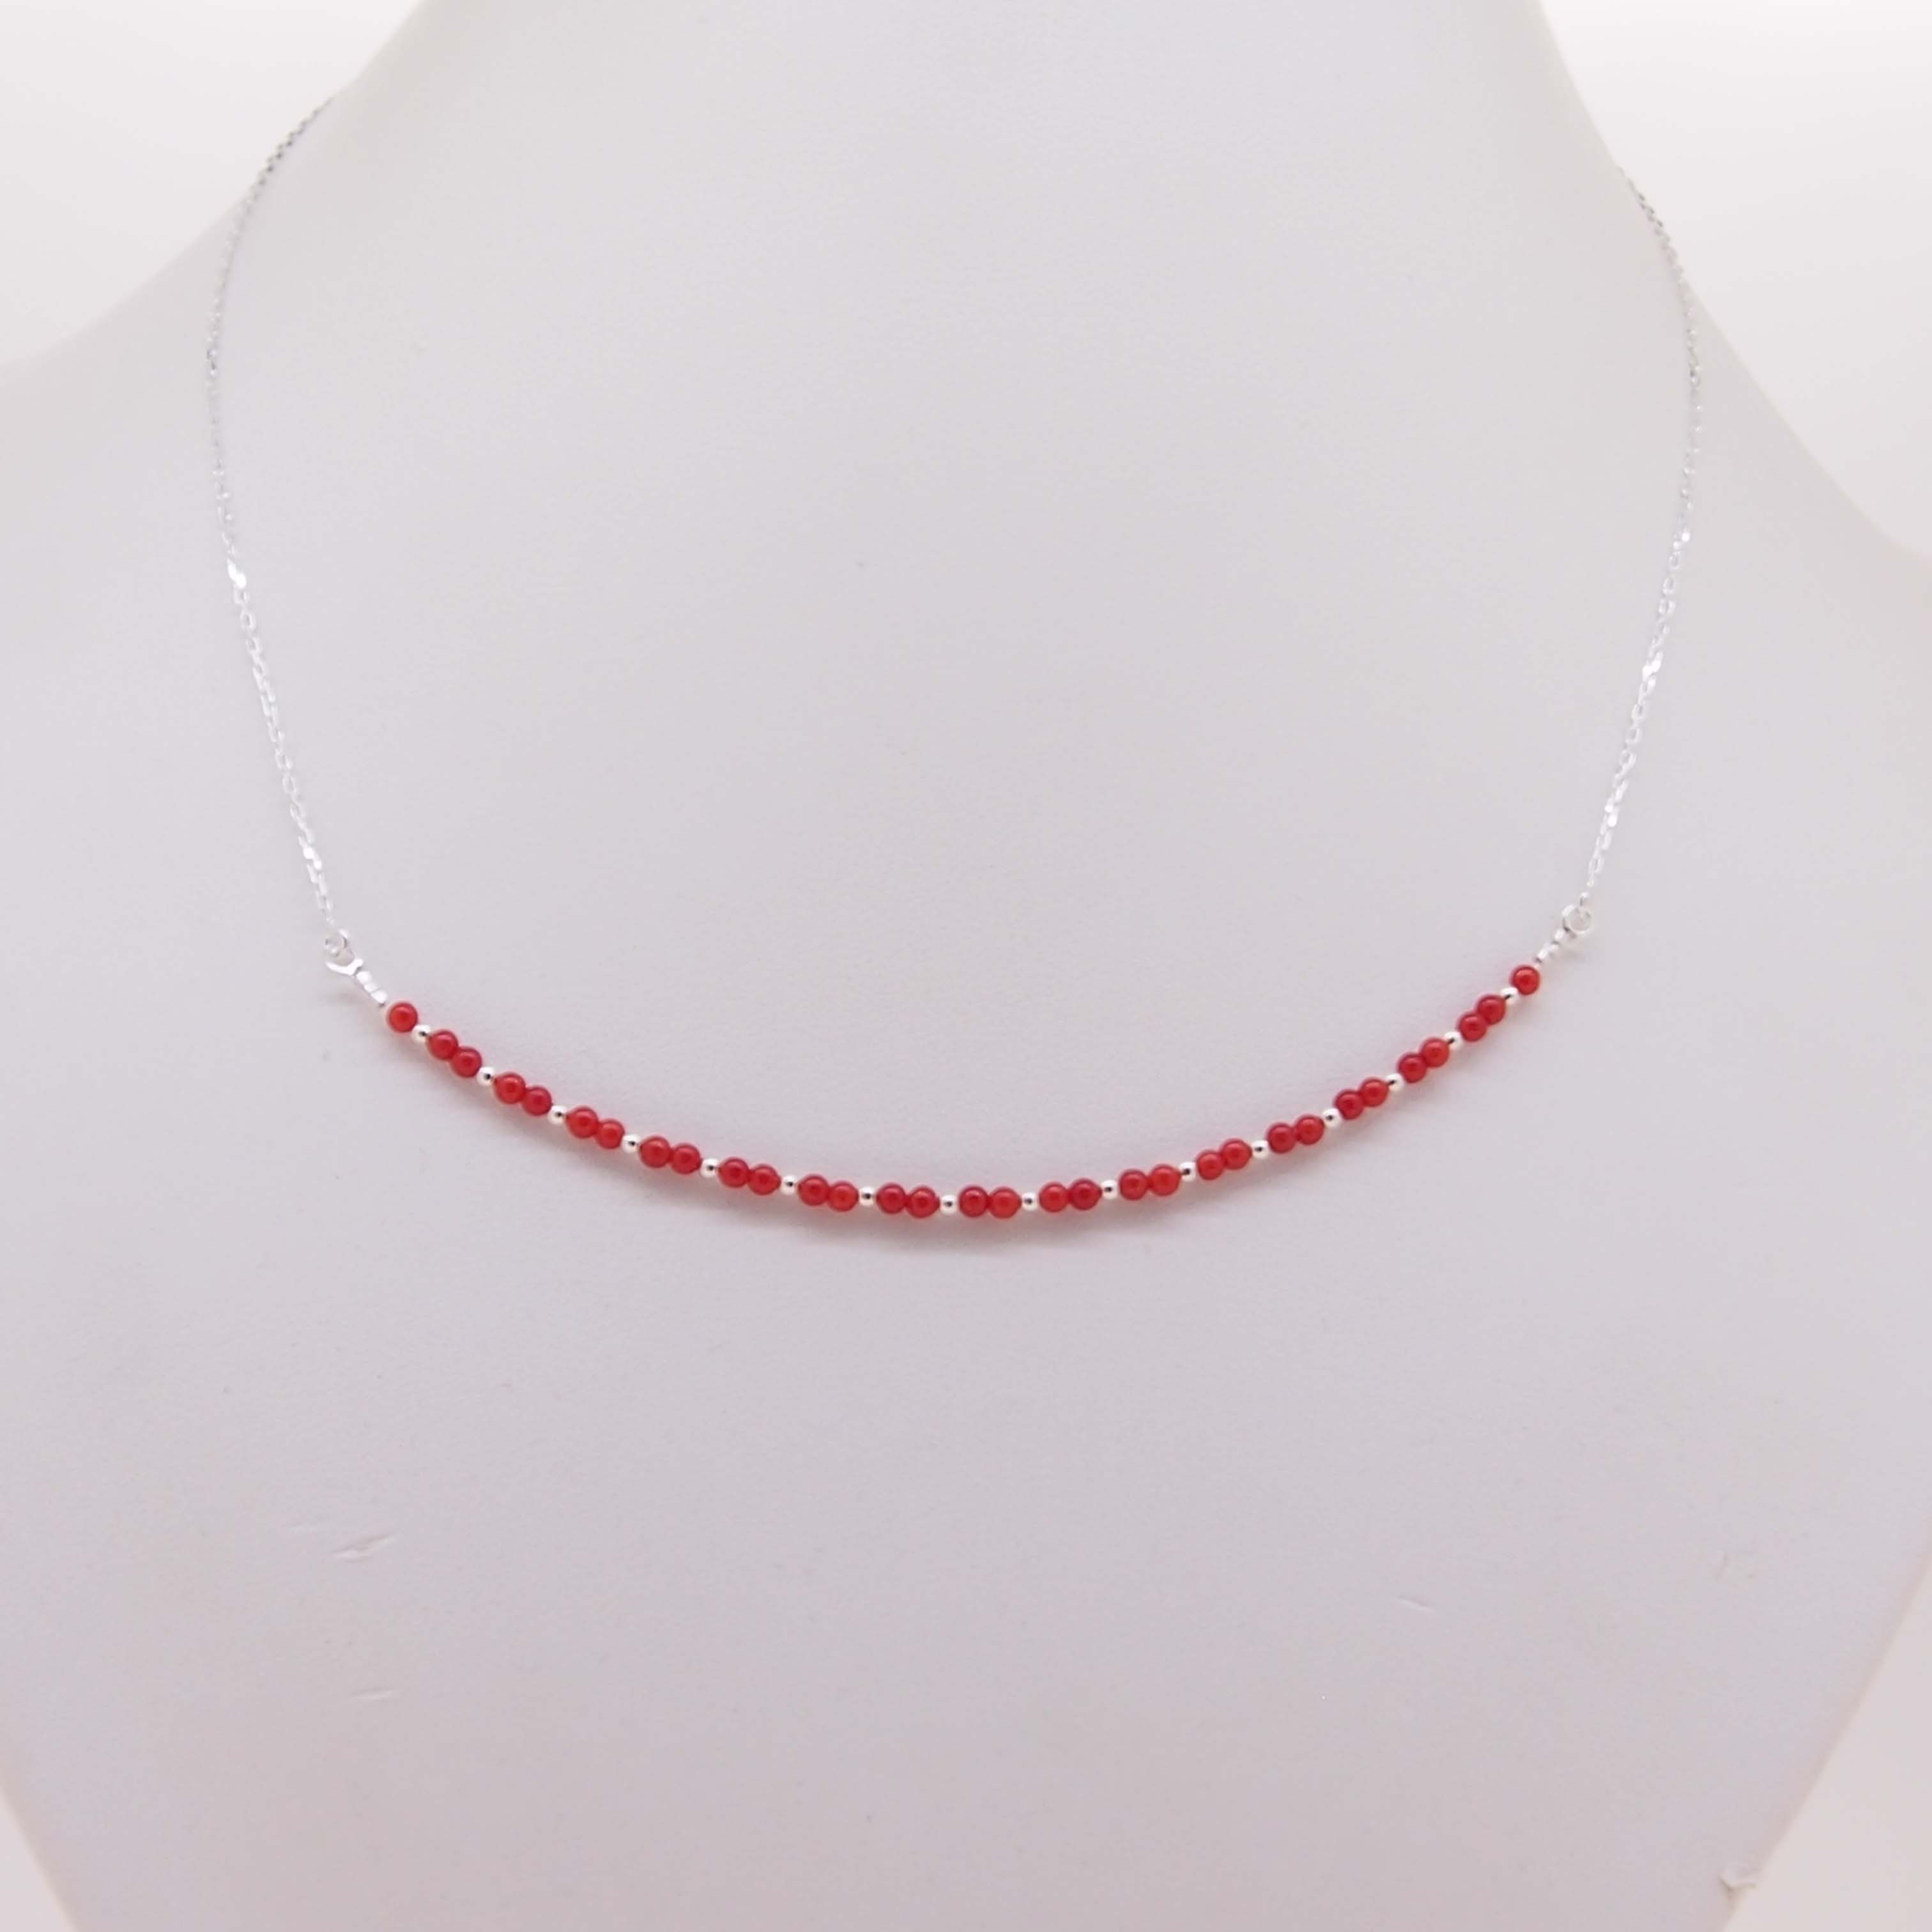 Rouge 4-7 mm rond naturelles corail Collier Pour Femmes Bijoux 33" collier long 